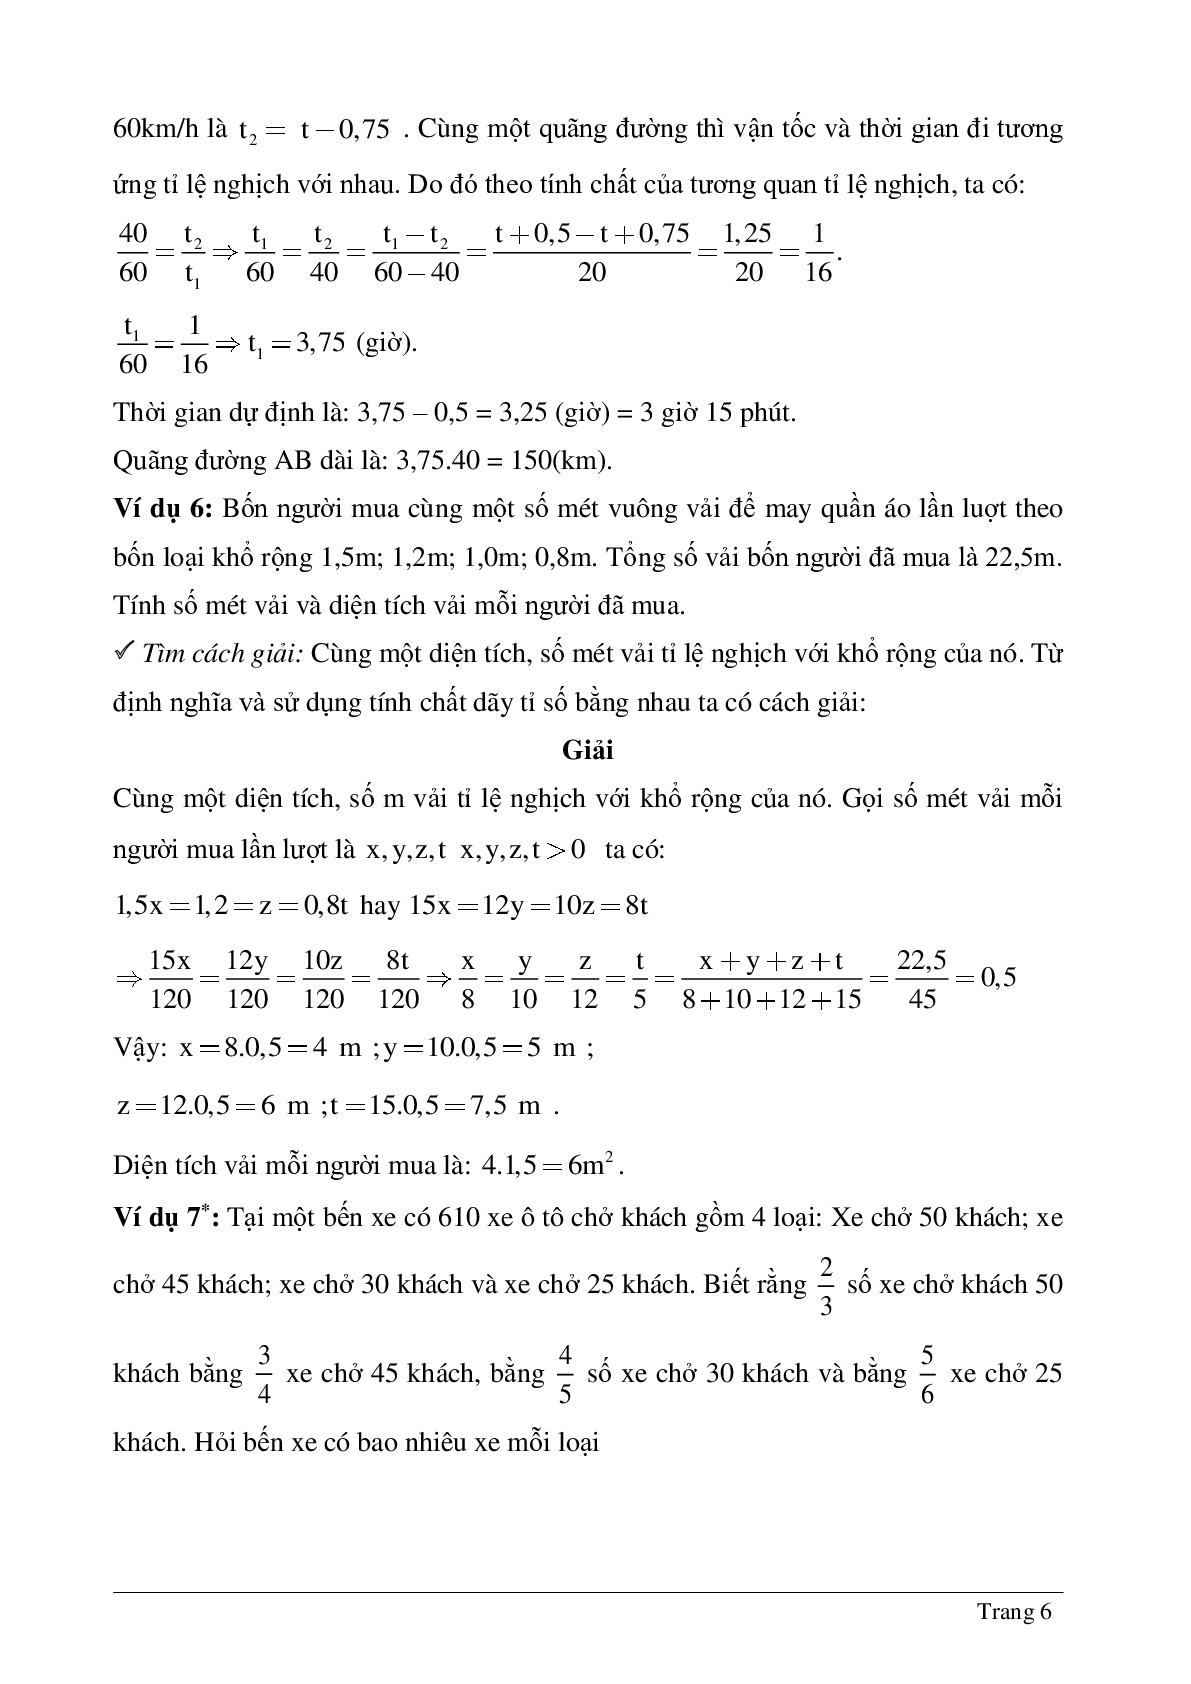 Hệ thống những bài tập thường gặp về Đại lượng tỉ lệ nghịch đại số lớp 7 chia tiết (trang 6)